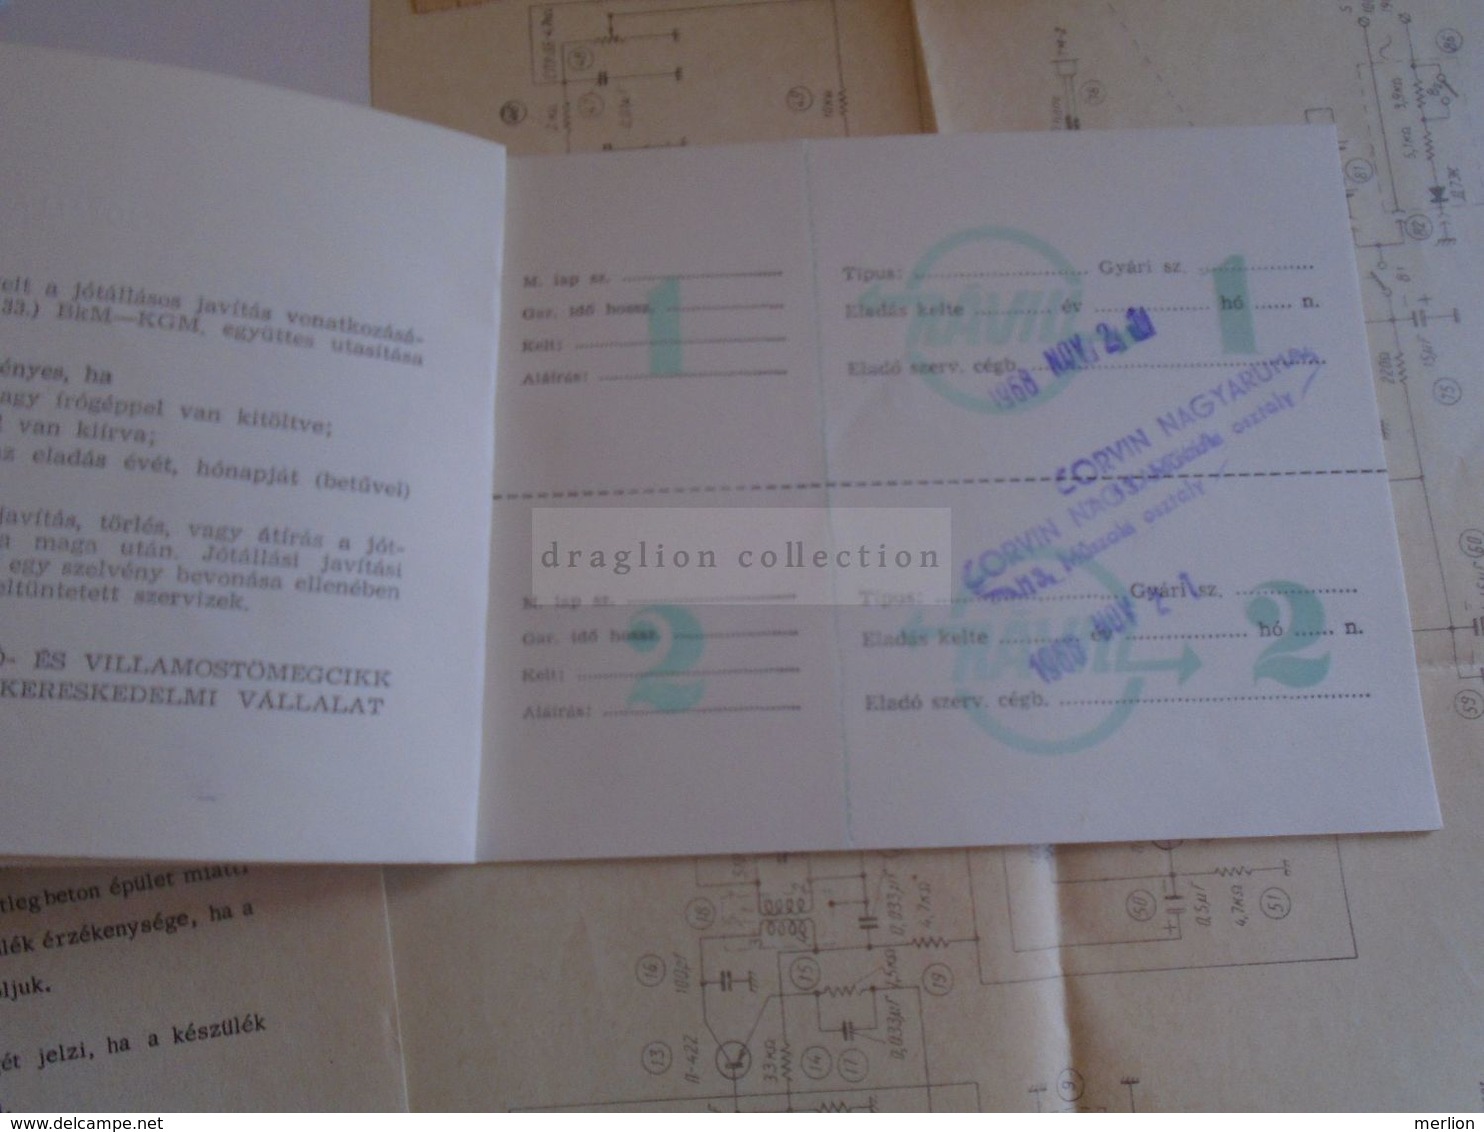 ZA284.11   Hungary  SOKOL  Radio  documents - warraty card, receipt, service  documents  etc  1968